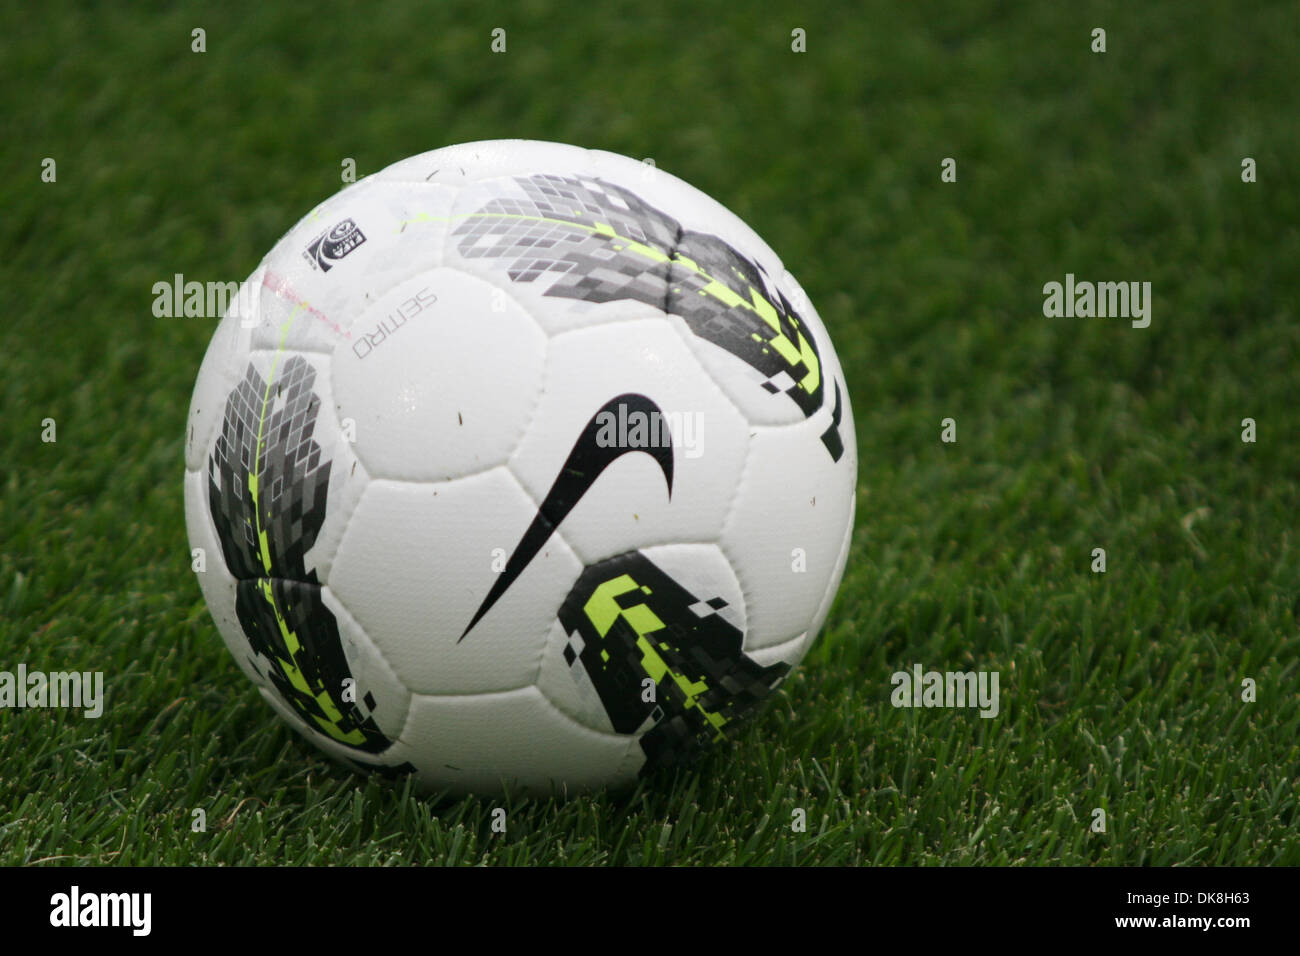 Julio 2011 - Toronto, Ontario, Canadá - El juego de pelota de Nike durante Mundial de Fútbol de Herbalife reto juego de fútbol entre Juventus de Italia y el